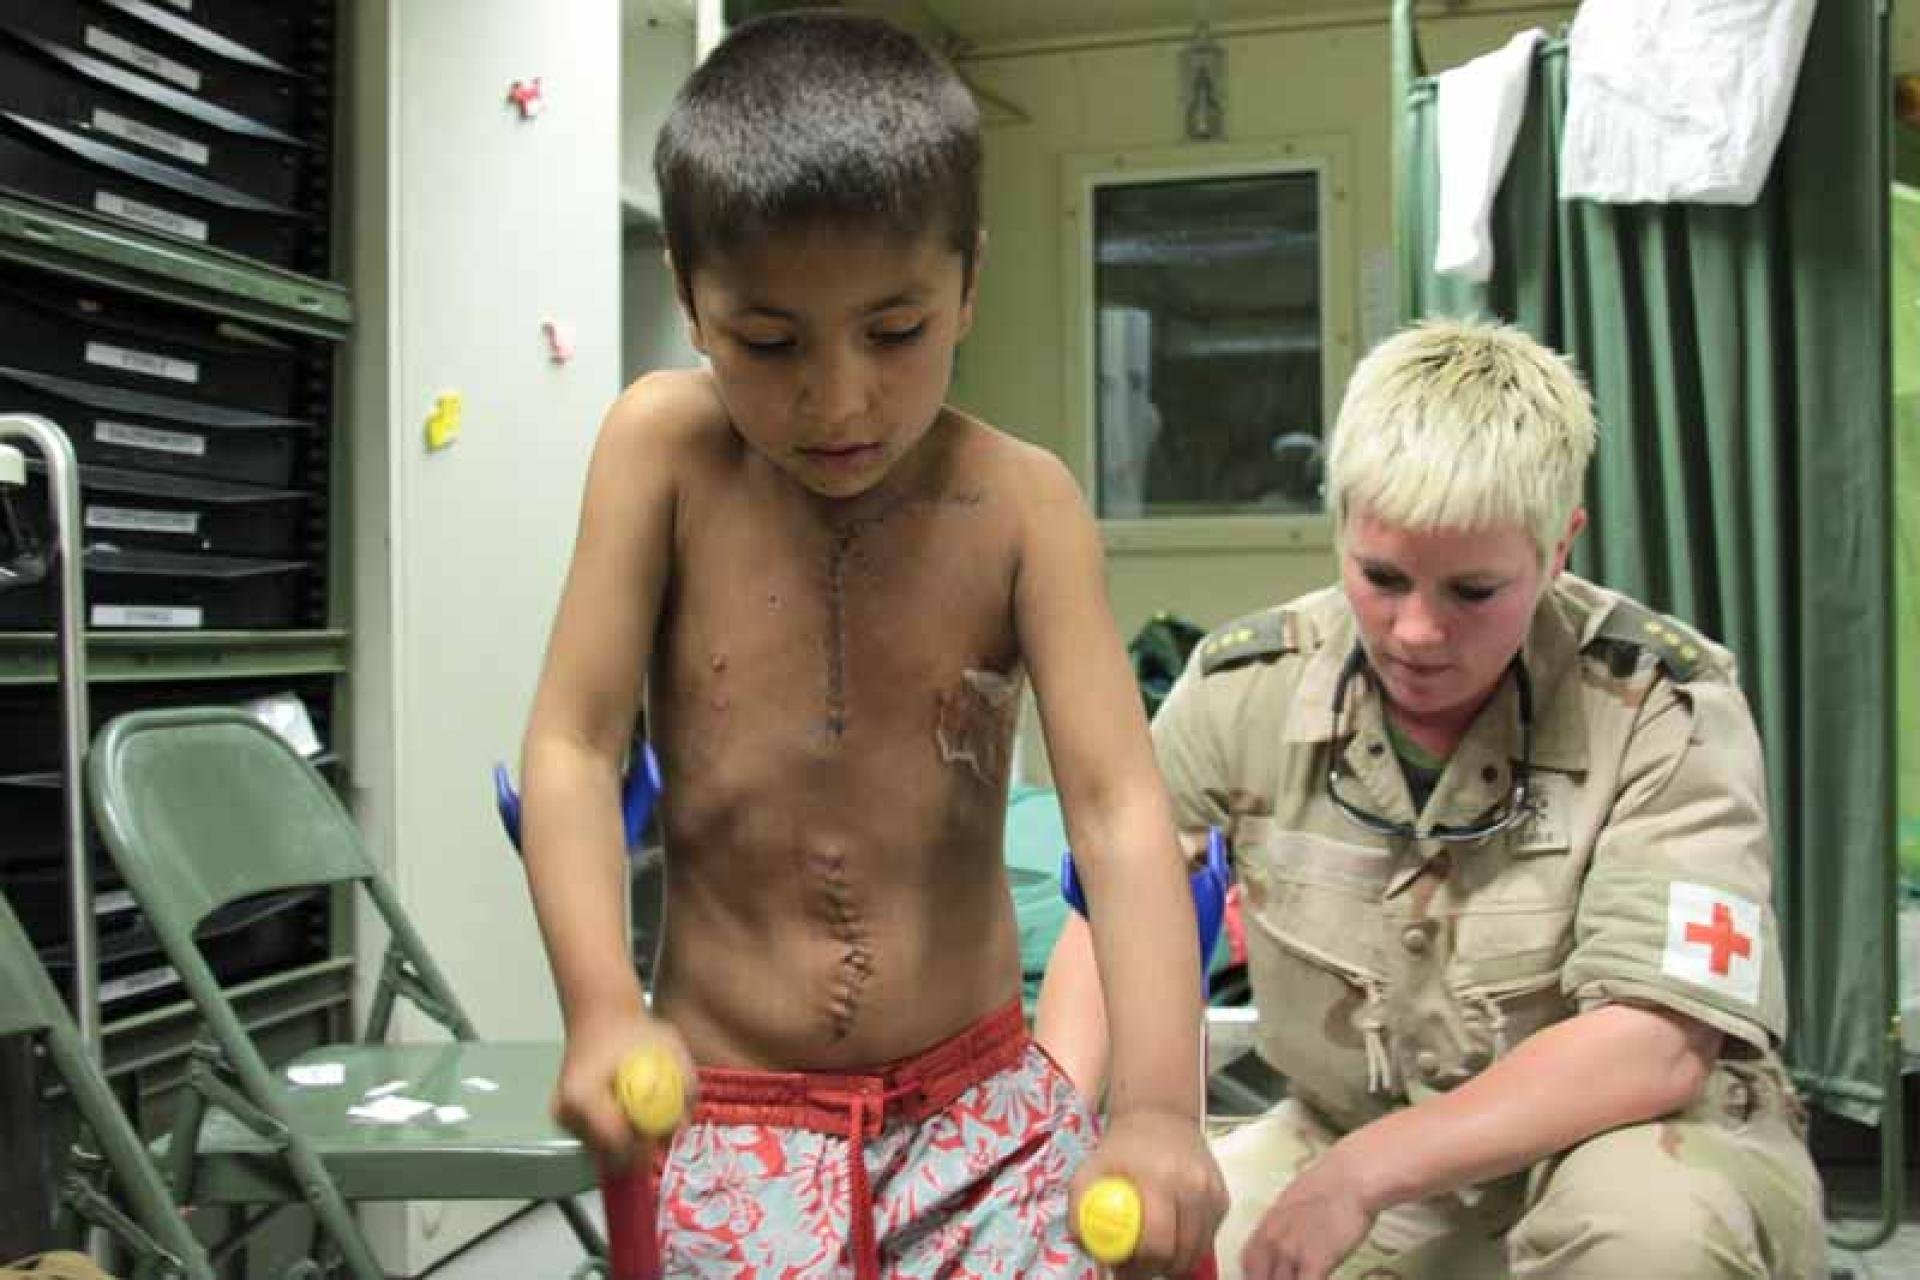 Vergroot afbeelding Jongetje met zwart haar en littekens leert lopen met krukken, een vrouwelijke militair helpt 